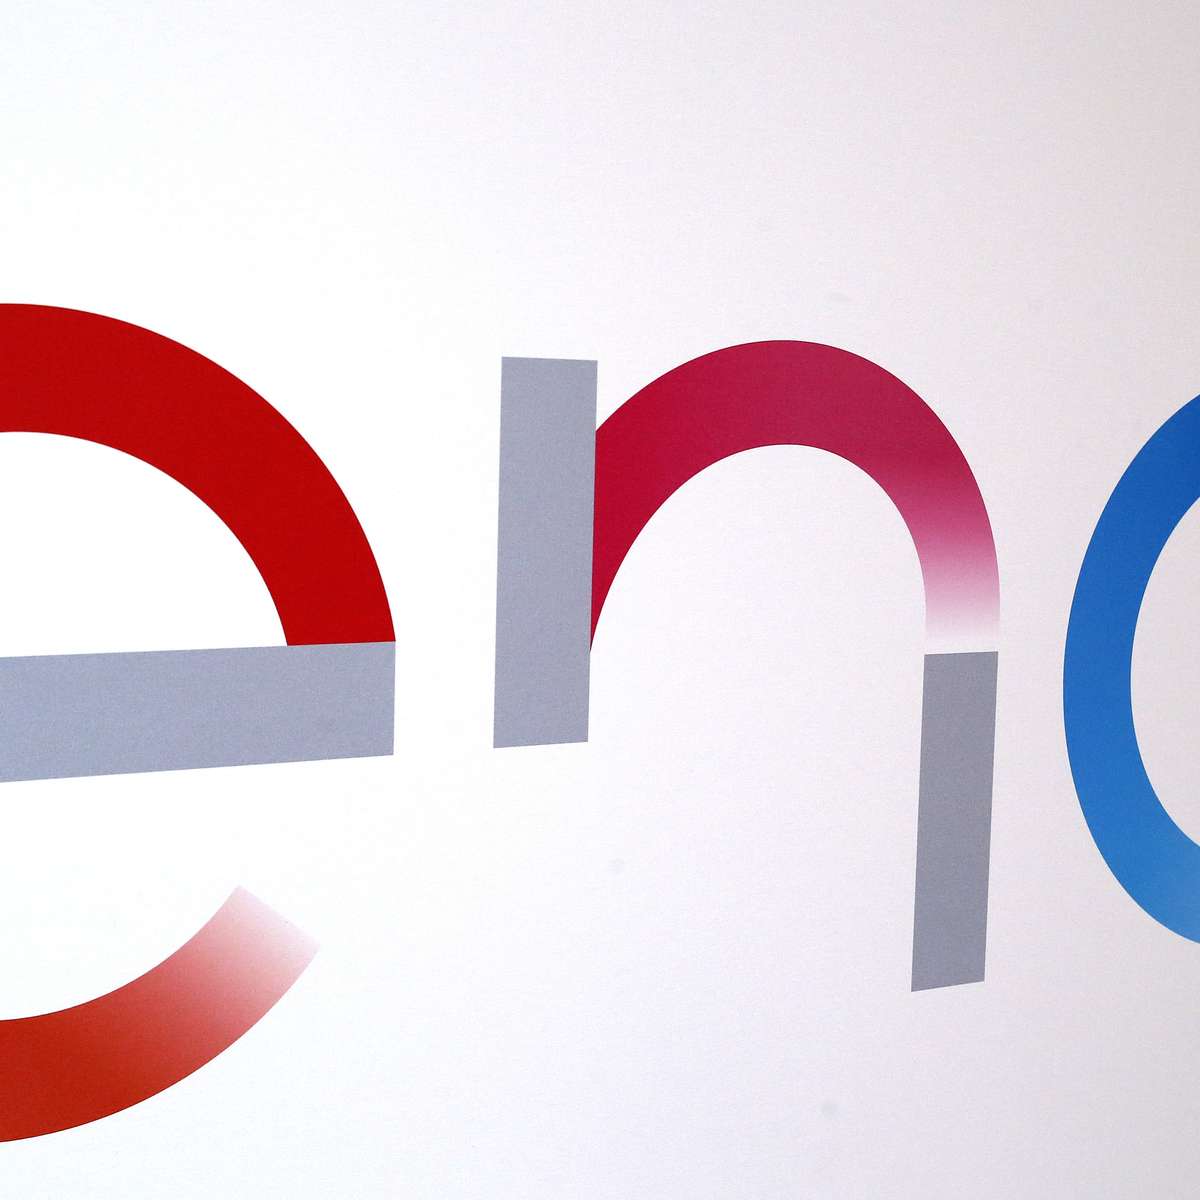 Italiana Enel busca mais aquisições em energia no Brasil, diz diretor.